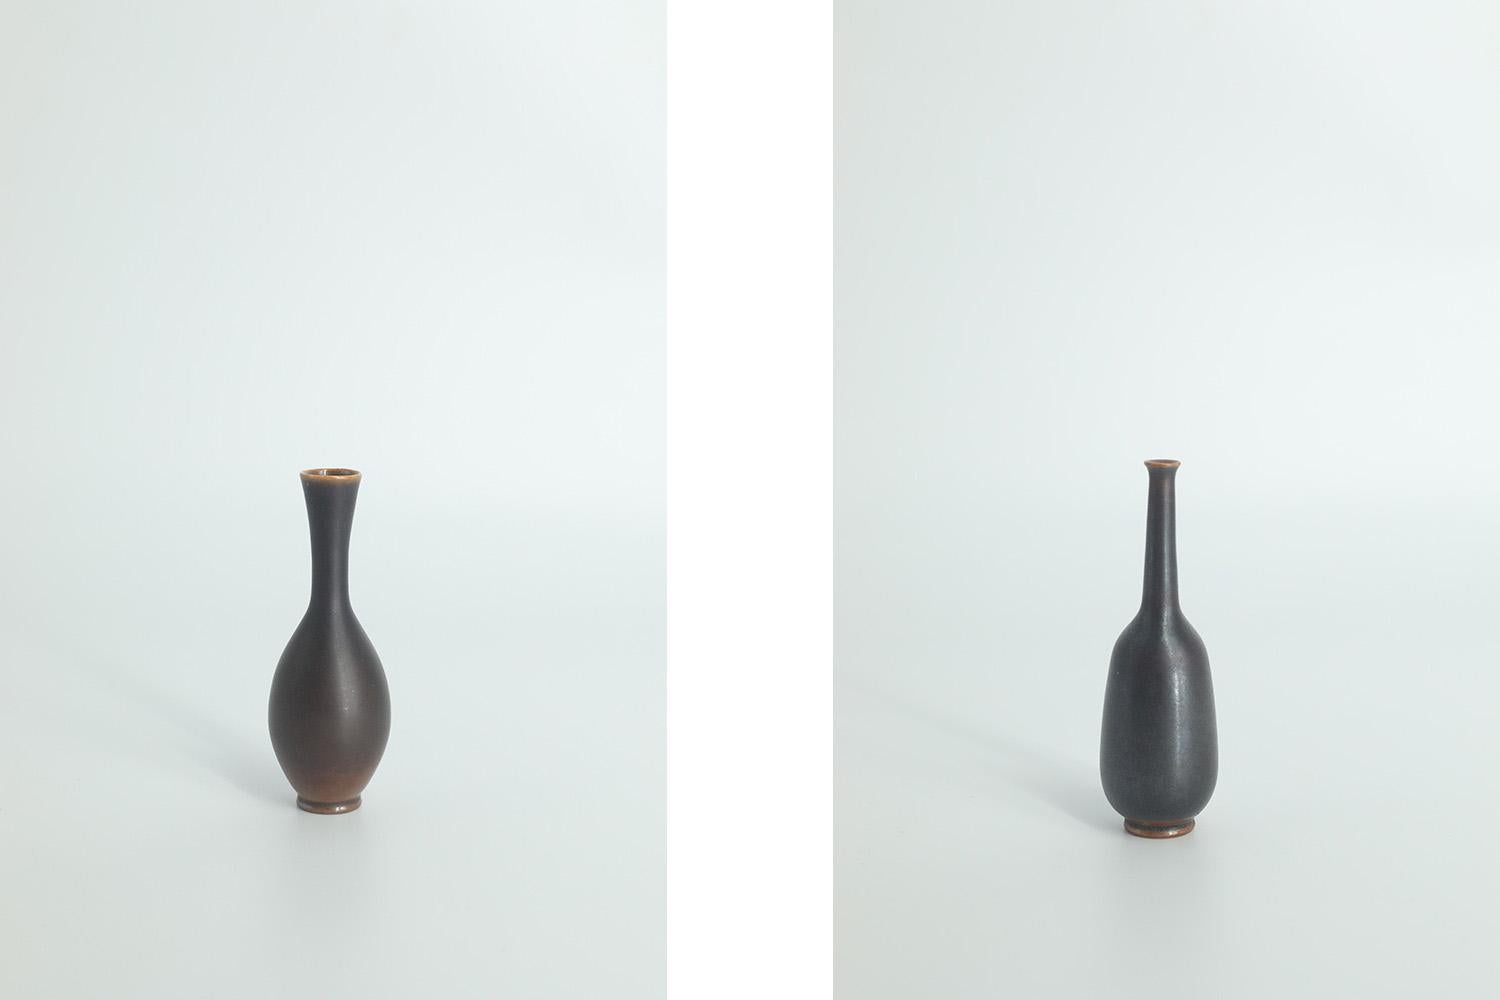 
1. Hauteur 8,5 cm  Largeur 2.5 cm  Profondeur 2.5 cm
2. Hauteur 8 cm  Largeur 2.5 cm  Profondeur 2.5 cm

Cet ensemble de deux vases miniatures a été conçu par John Andersson pour la manufacture suédoise Höganäs Keramik dans les années 1950.